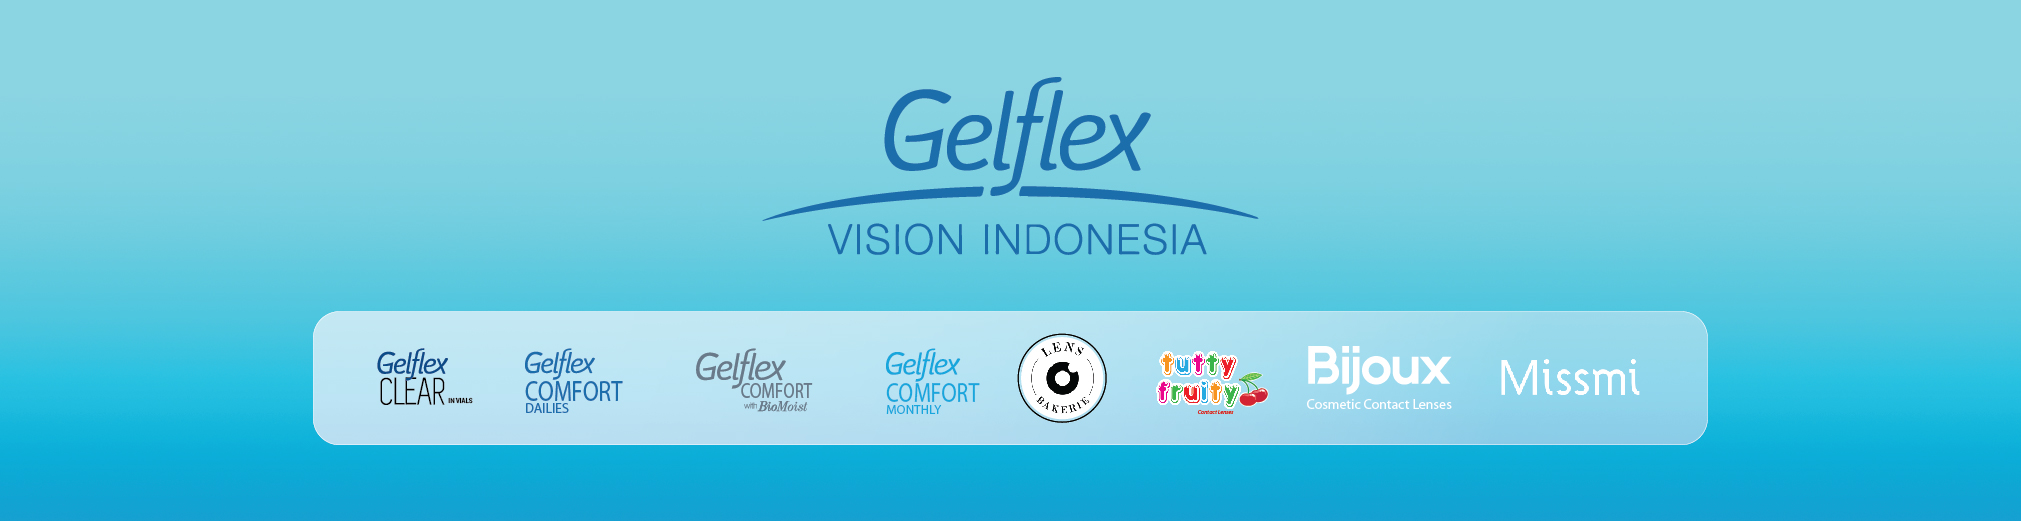 PT Gelflex Vision Indonesia